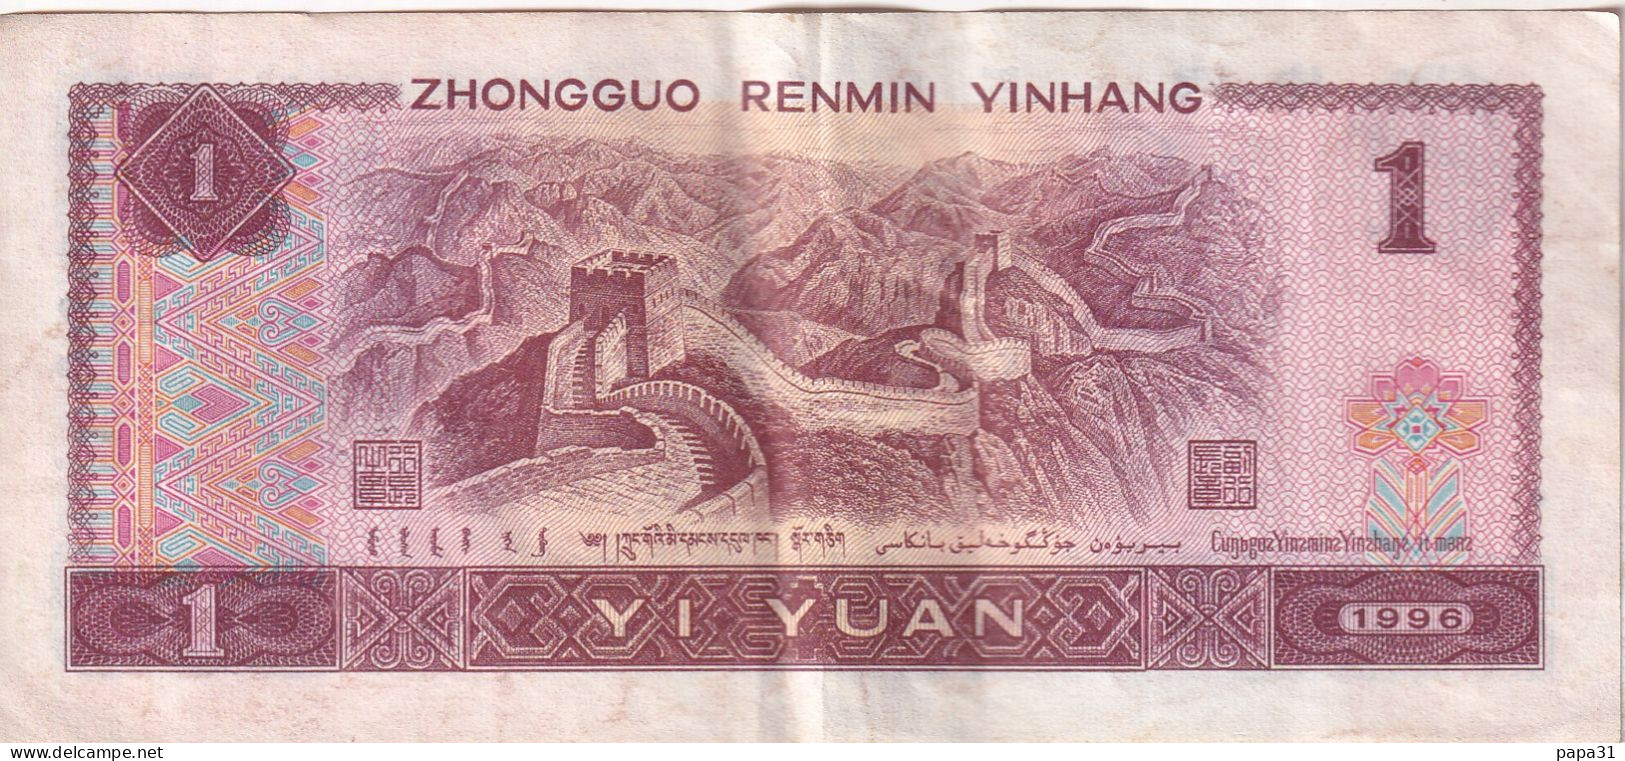 Billet De Banque - ZHONGGUO RENMIN YINHANG 1 YI YUAN - Chine